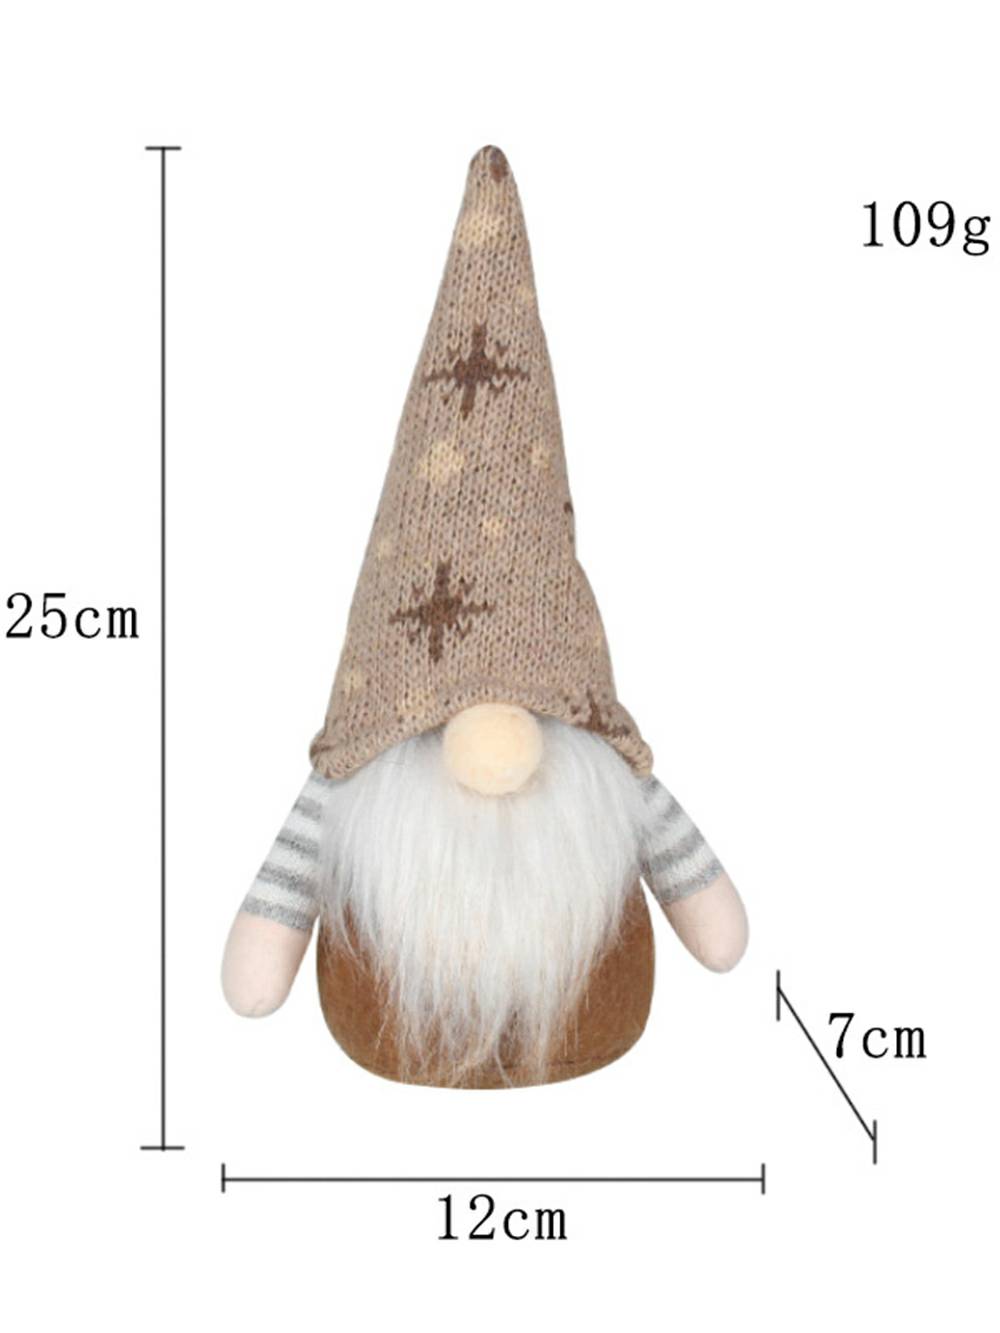 Świąteczny pluszowy elf z dzianinową czapką w kształcie płatka śniegu, lalka Rudolph